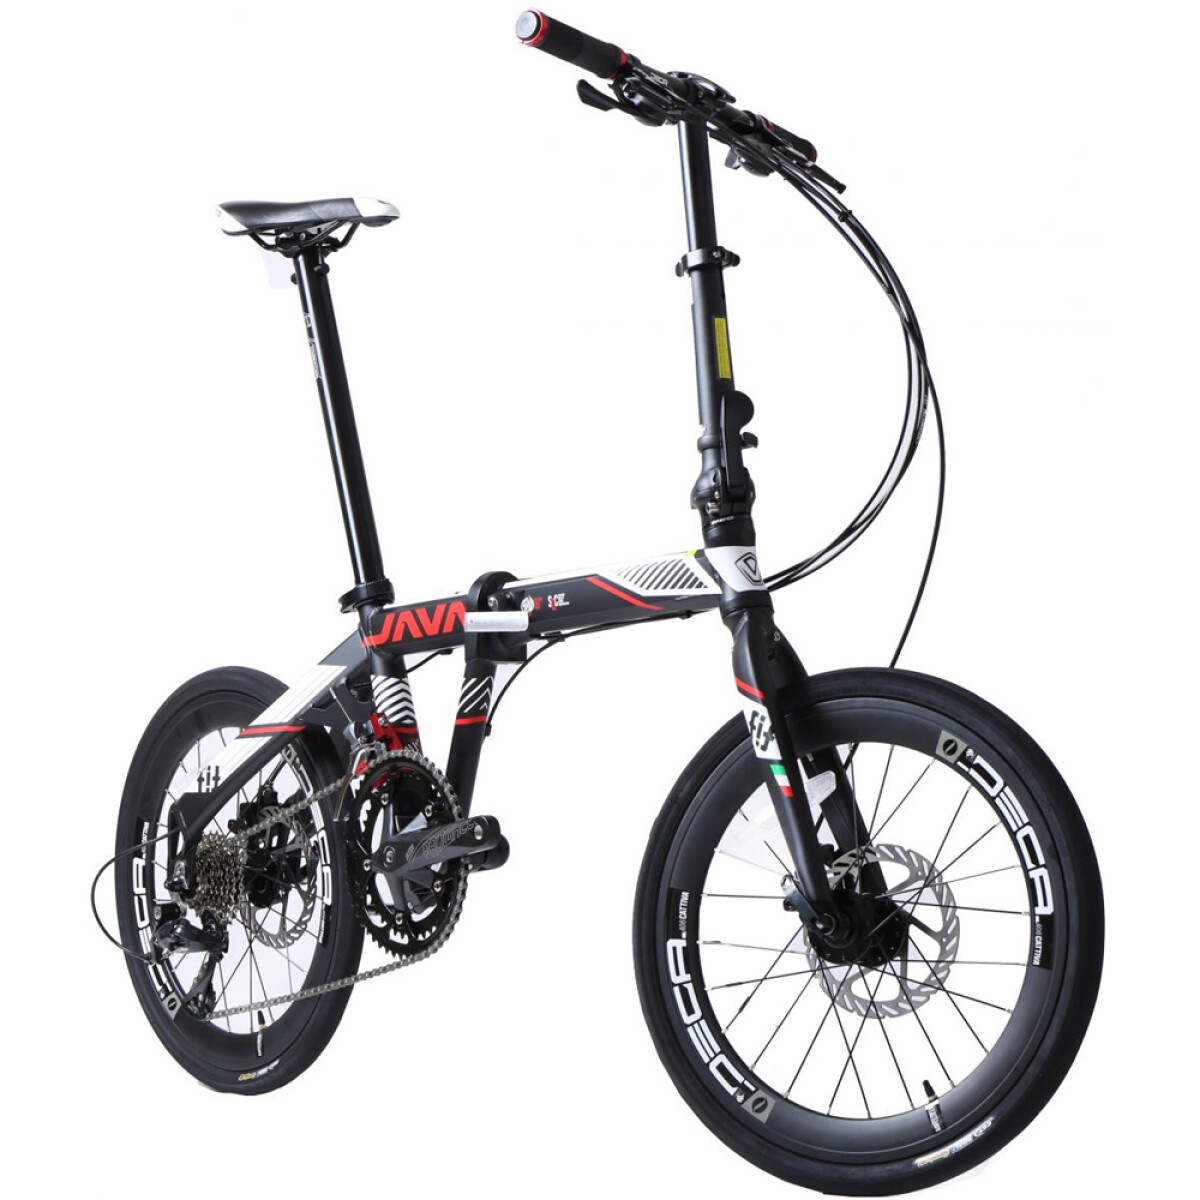 Java - Bicicleta de Ciudad- Plegable Fit. Rodado 20", 18 Velocidades., Color: Negro /Blanco. - 001 